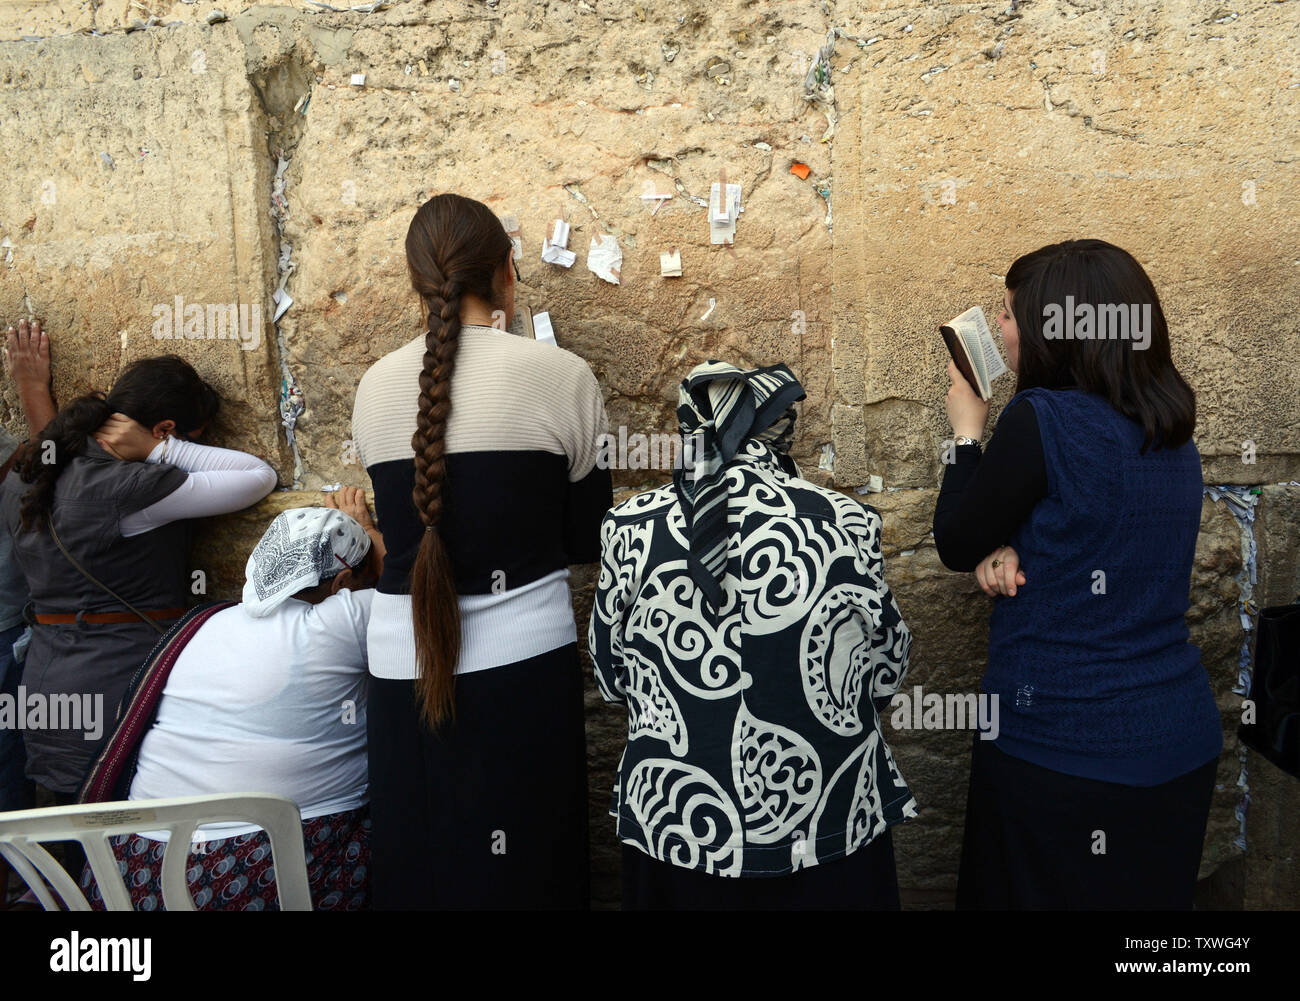 Jüdische Frauen beten vor dem Gebet Hinweise an der westlichen Wand geklebt, heiligsten Ort des Judentums, in Jerusalem, Israel, 9. Juni 2013. Mehr als 300 Frauen aus Frauen der Mauer gebetet hinter einer Barriere an der westlichen Mauer als Grenze Polizei verhindert ultra-orthodoxe Männer von ihnen erreichen, während sie Tefillin und Gebet Schals trug den ersten Tag des jüdischen Monats Tamuz zu feiern. Frauen der Wand haben für die Religionsfreiheit und die Rechte der Frauen an der westlichen Mauer seit mehr als 25 Jahren gekämpft. UPI/Debbie Hill Stockfoto